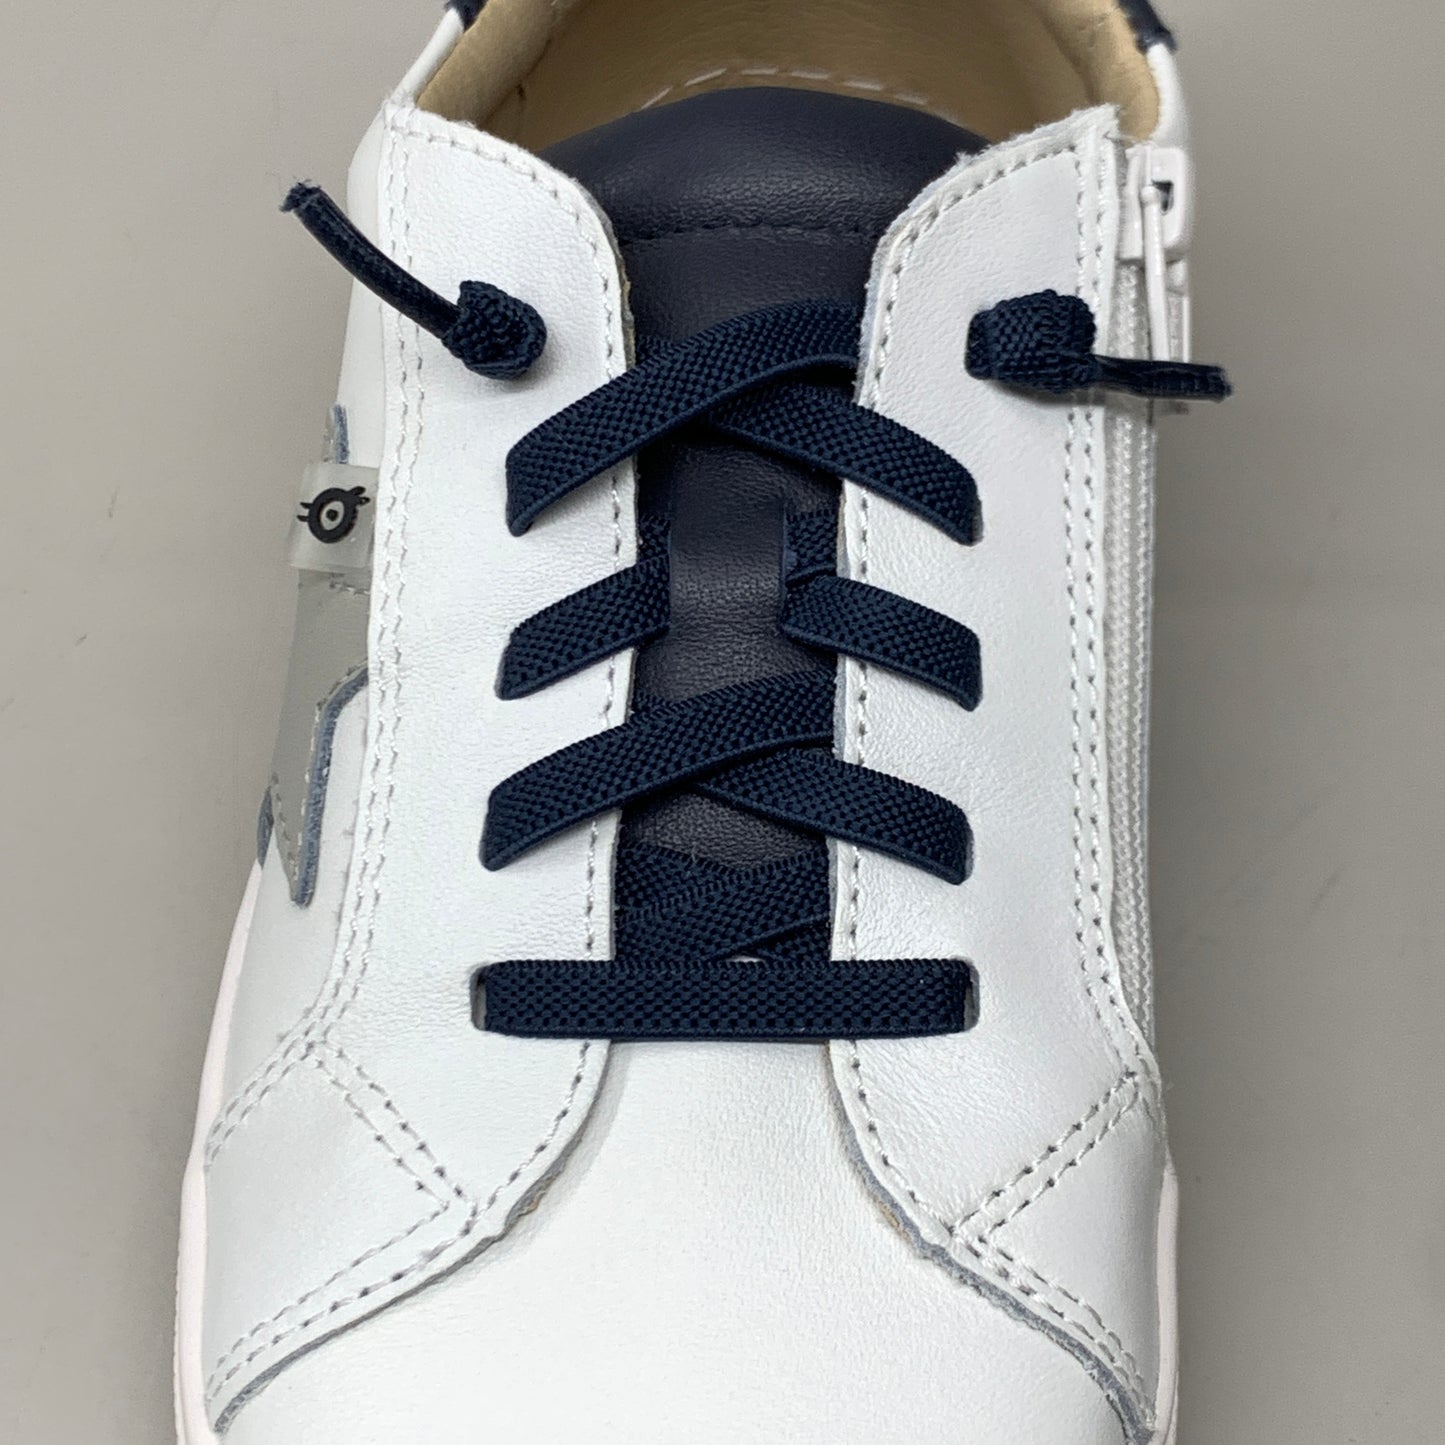 OLD SOLES Comet Runner Sneakers Kid’s Sz 8 EU 24 Snow/Navy/Gris #6149